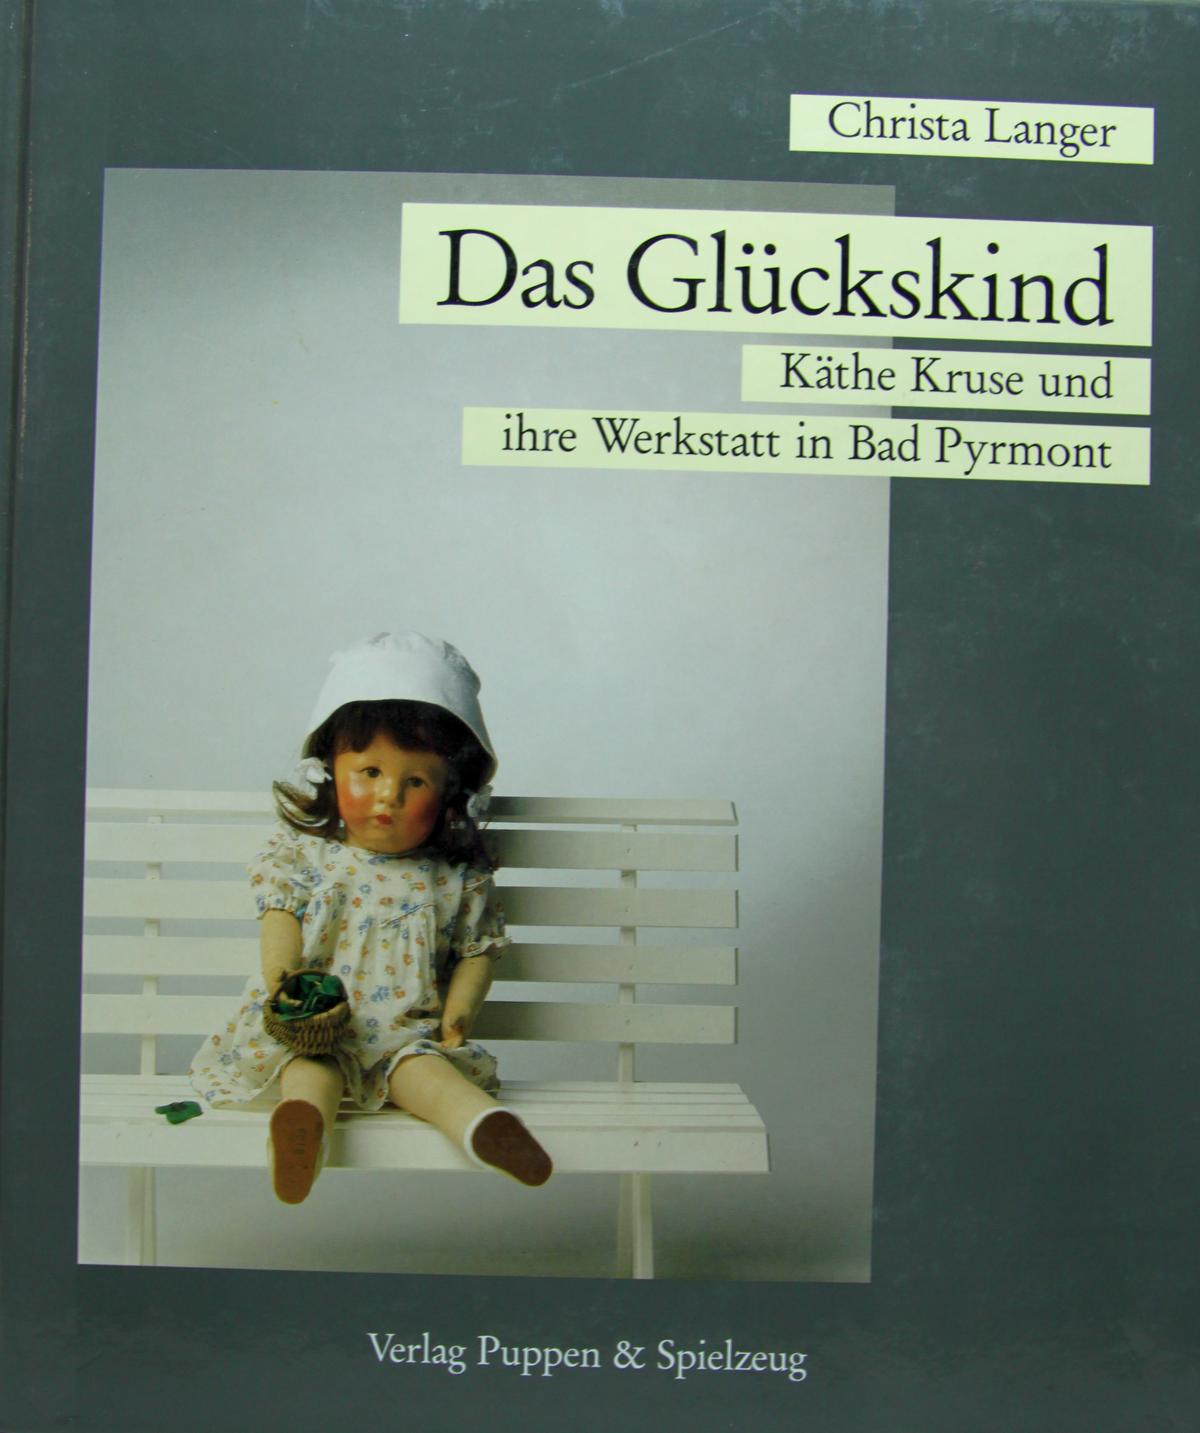 Buch "Das Glückskind"  Käthe Kruse und ihre Werkstatt in Bad Pyrmont, von Christa Langer, erschienen im Verlag Puppen & Sielzeug.